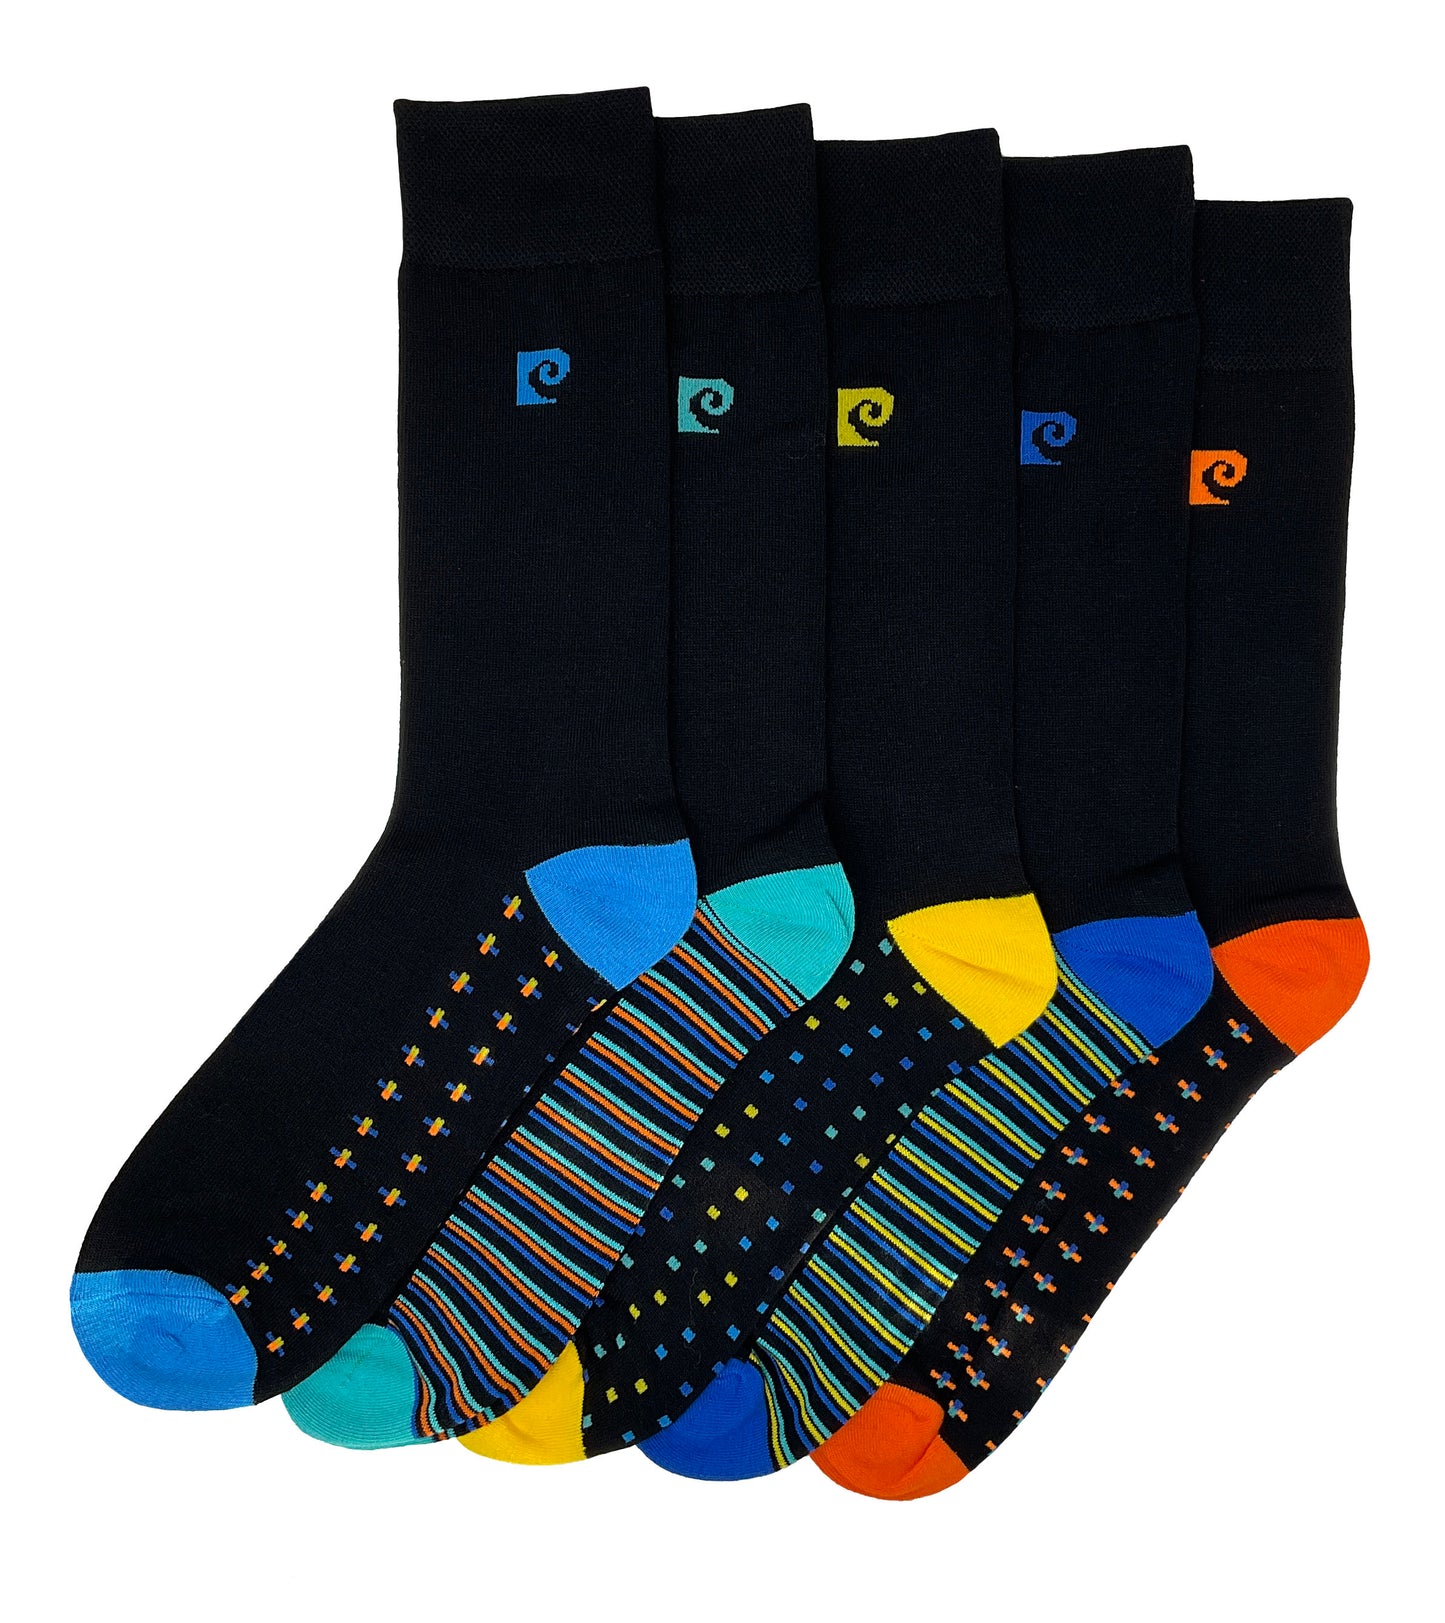 Pierre Cardin 5 Pack Bamboo Socks - Striped Heel & Toe